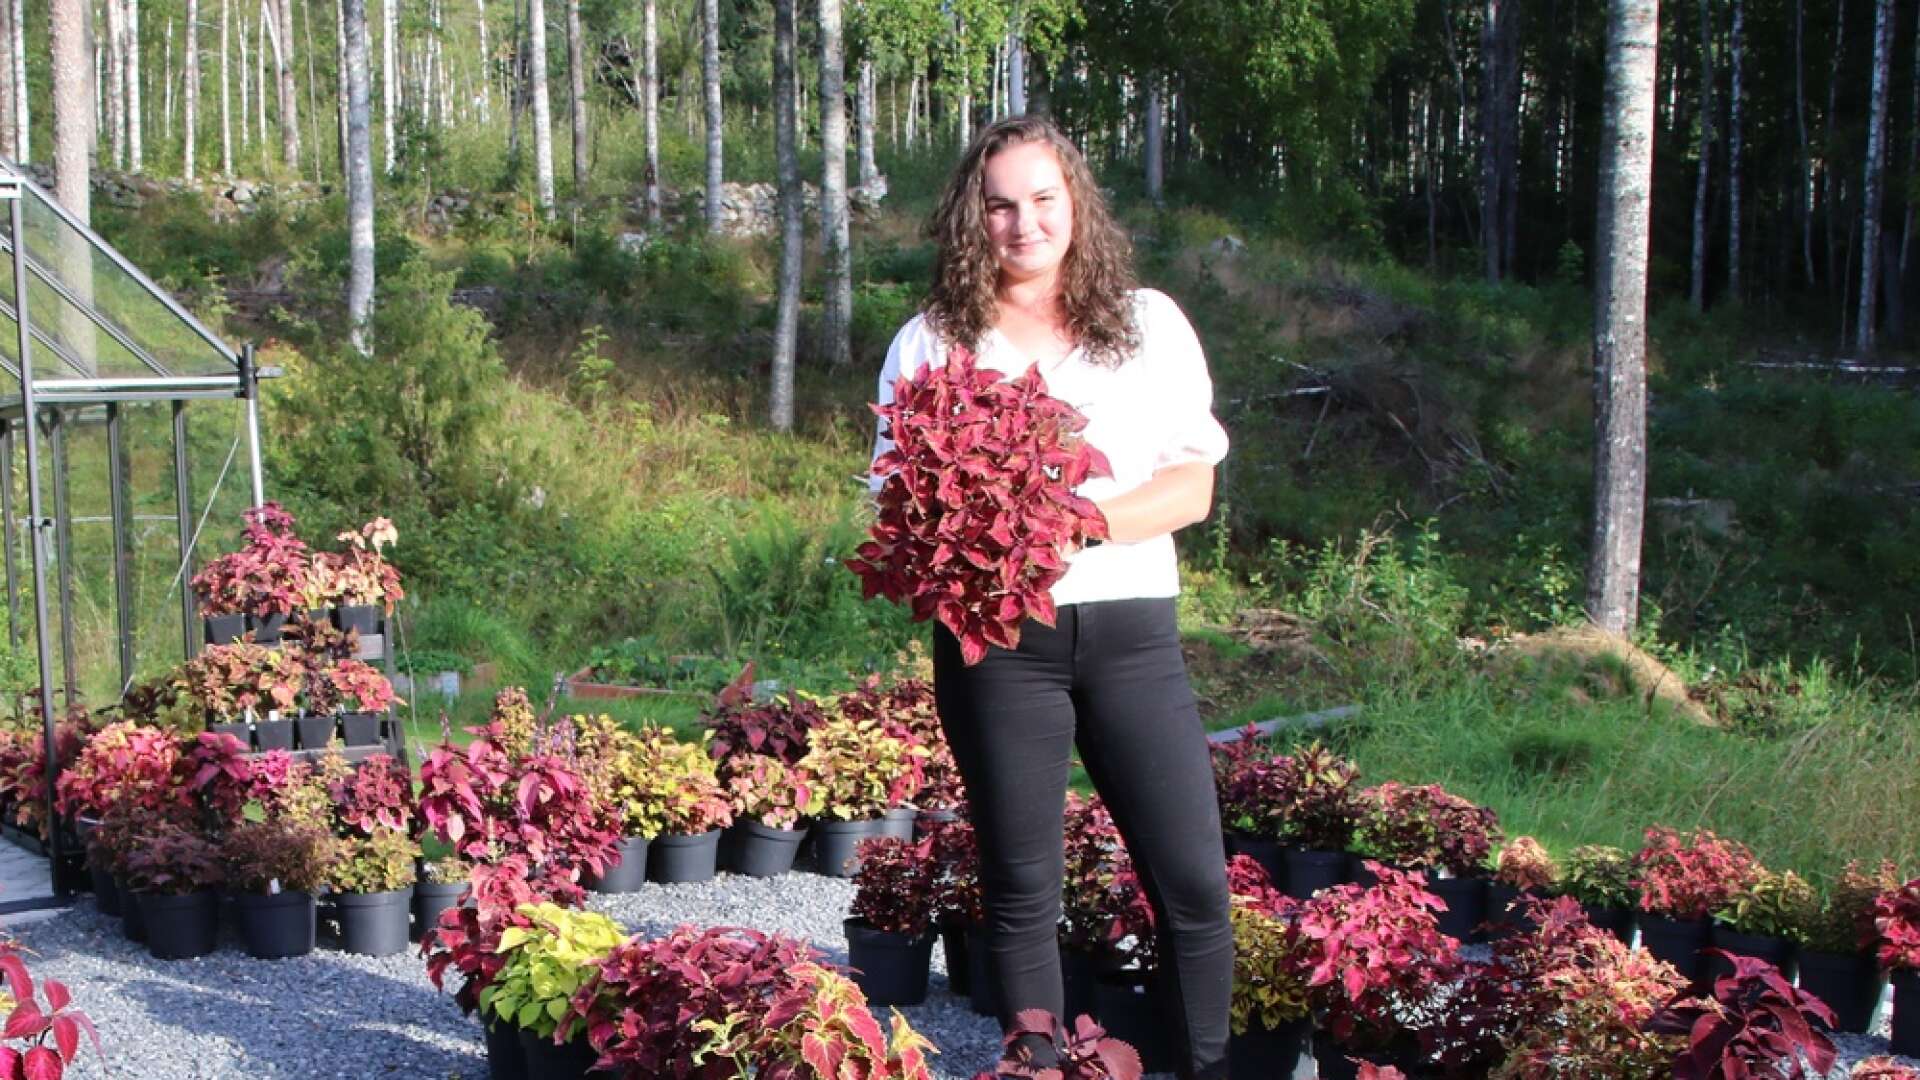 På lördag, strax före lunchtid, bjuder Laura Hoffmann in besökare till en öppen palettbladsträdgård hemma i Nordmark. Besökarna kommer att få se många olika palettbladsväxter och sticklingar.